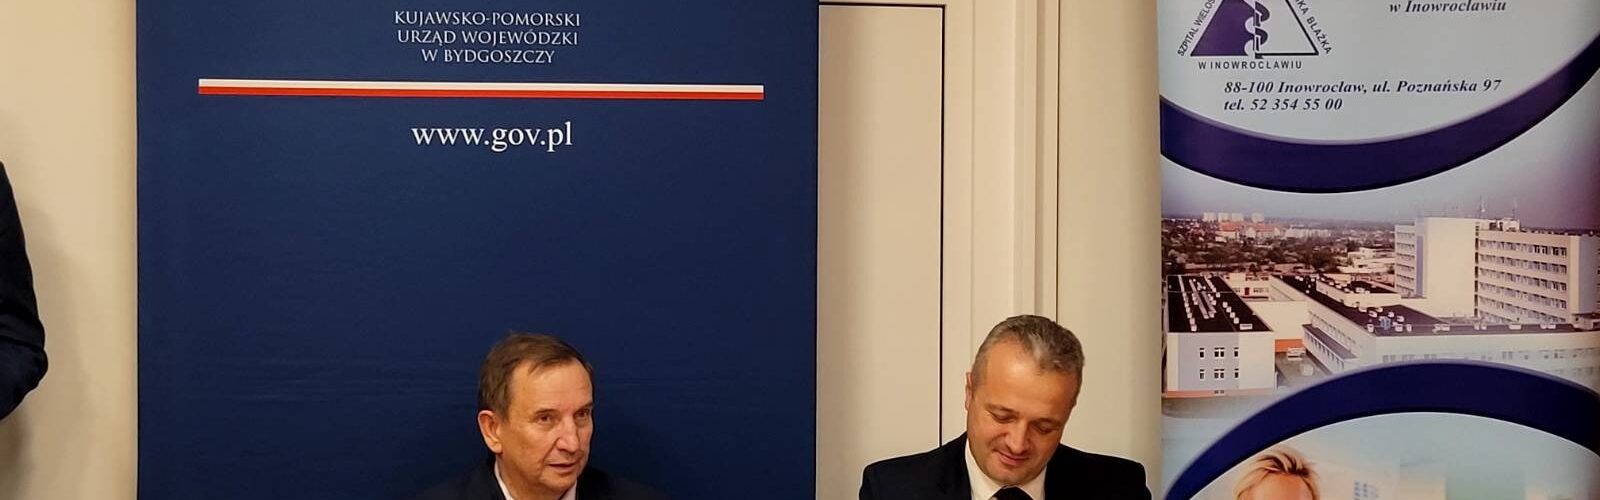 Podpisanie umowy o dofinansowaniu przez wojewodę Mikołaja Bogdanowicza i wicestarostę inowrocławskiego Tadeusza Majewskiego.